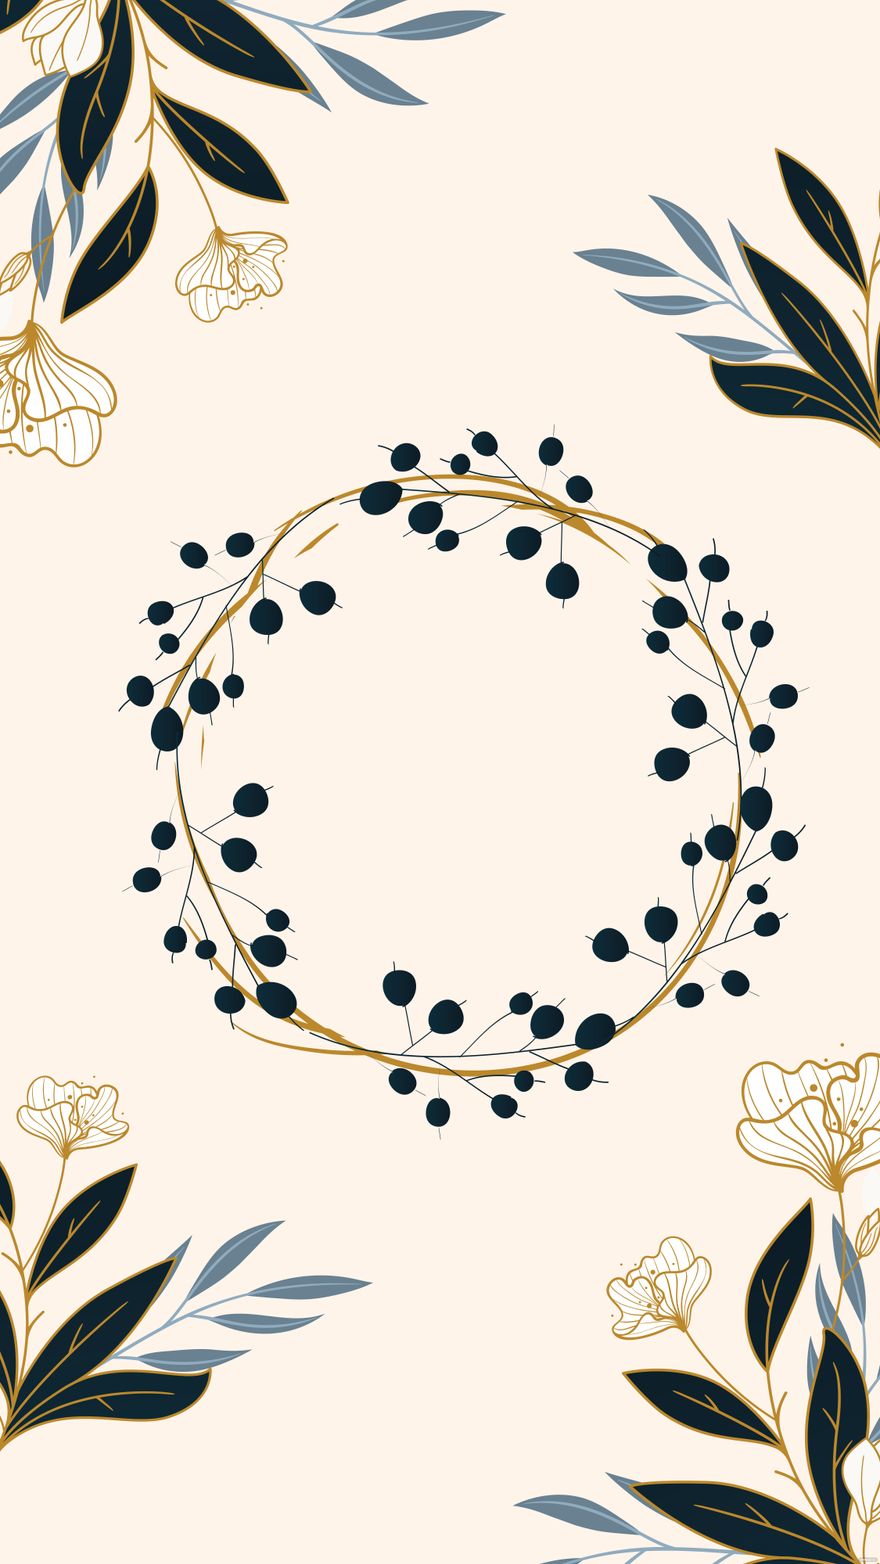 Wedding Wreath Mobile Background in Illustrator, EPS, SVG, JPG, PNG